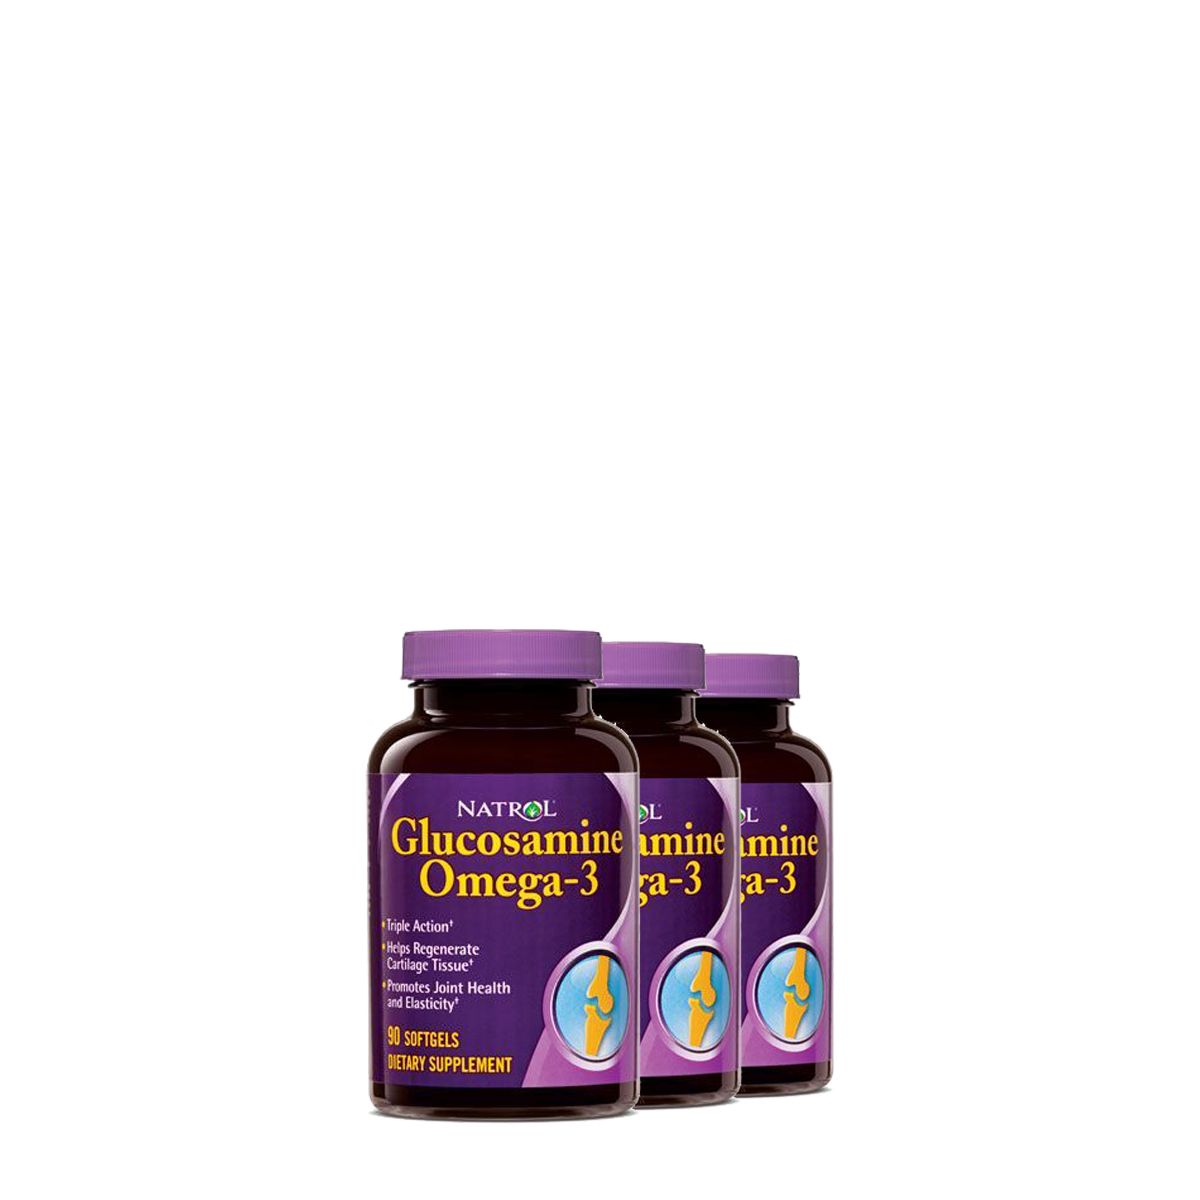 Glükozamin-omega-3-borágó komplex, Natrol Glucosamine Omega-3, 3x90 kapszula